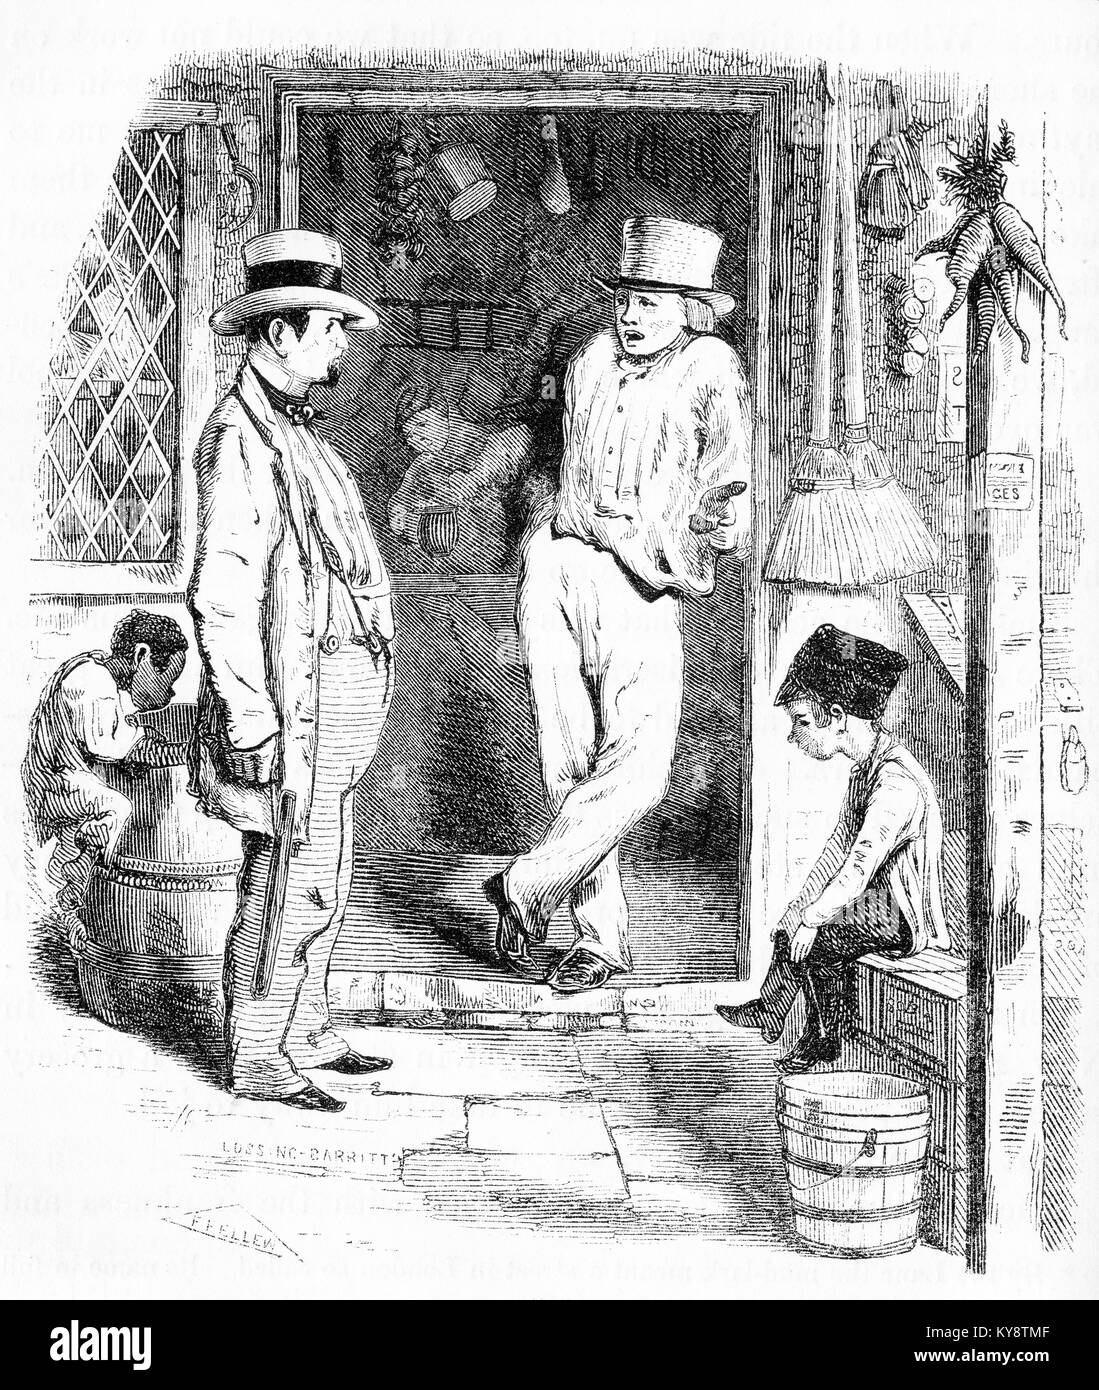 Gravur eines jungen Taschendiebstahl ein Mann in einer Londoner Straße Szene während der viktorianischen Ära. Von einem ursprünglichen Gravur in der Harper Geschichte Bücher von Jacob Abbott, 1854. Stockfoto